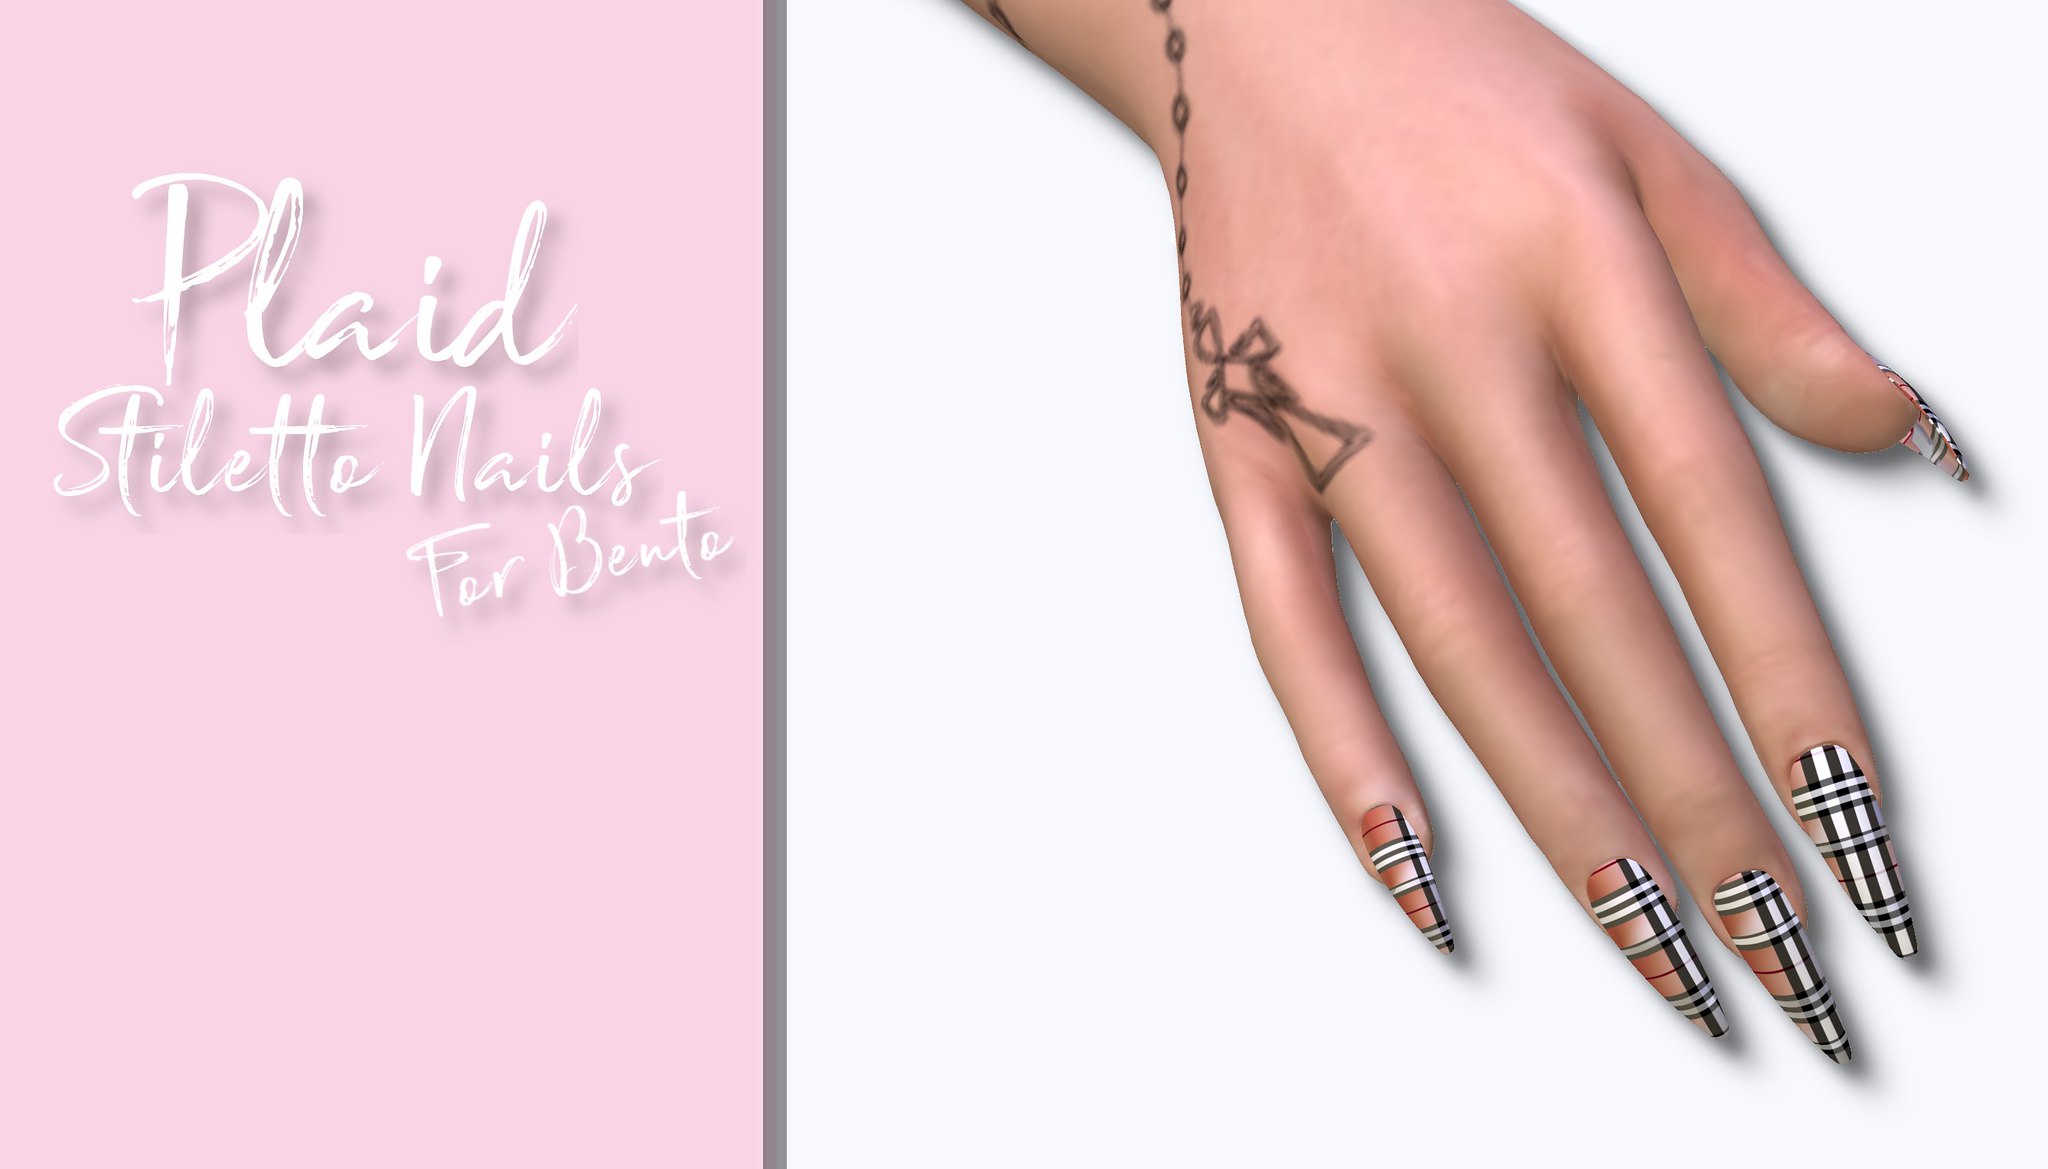 Plaid Stiletto Nails for Bento